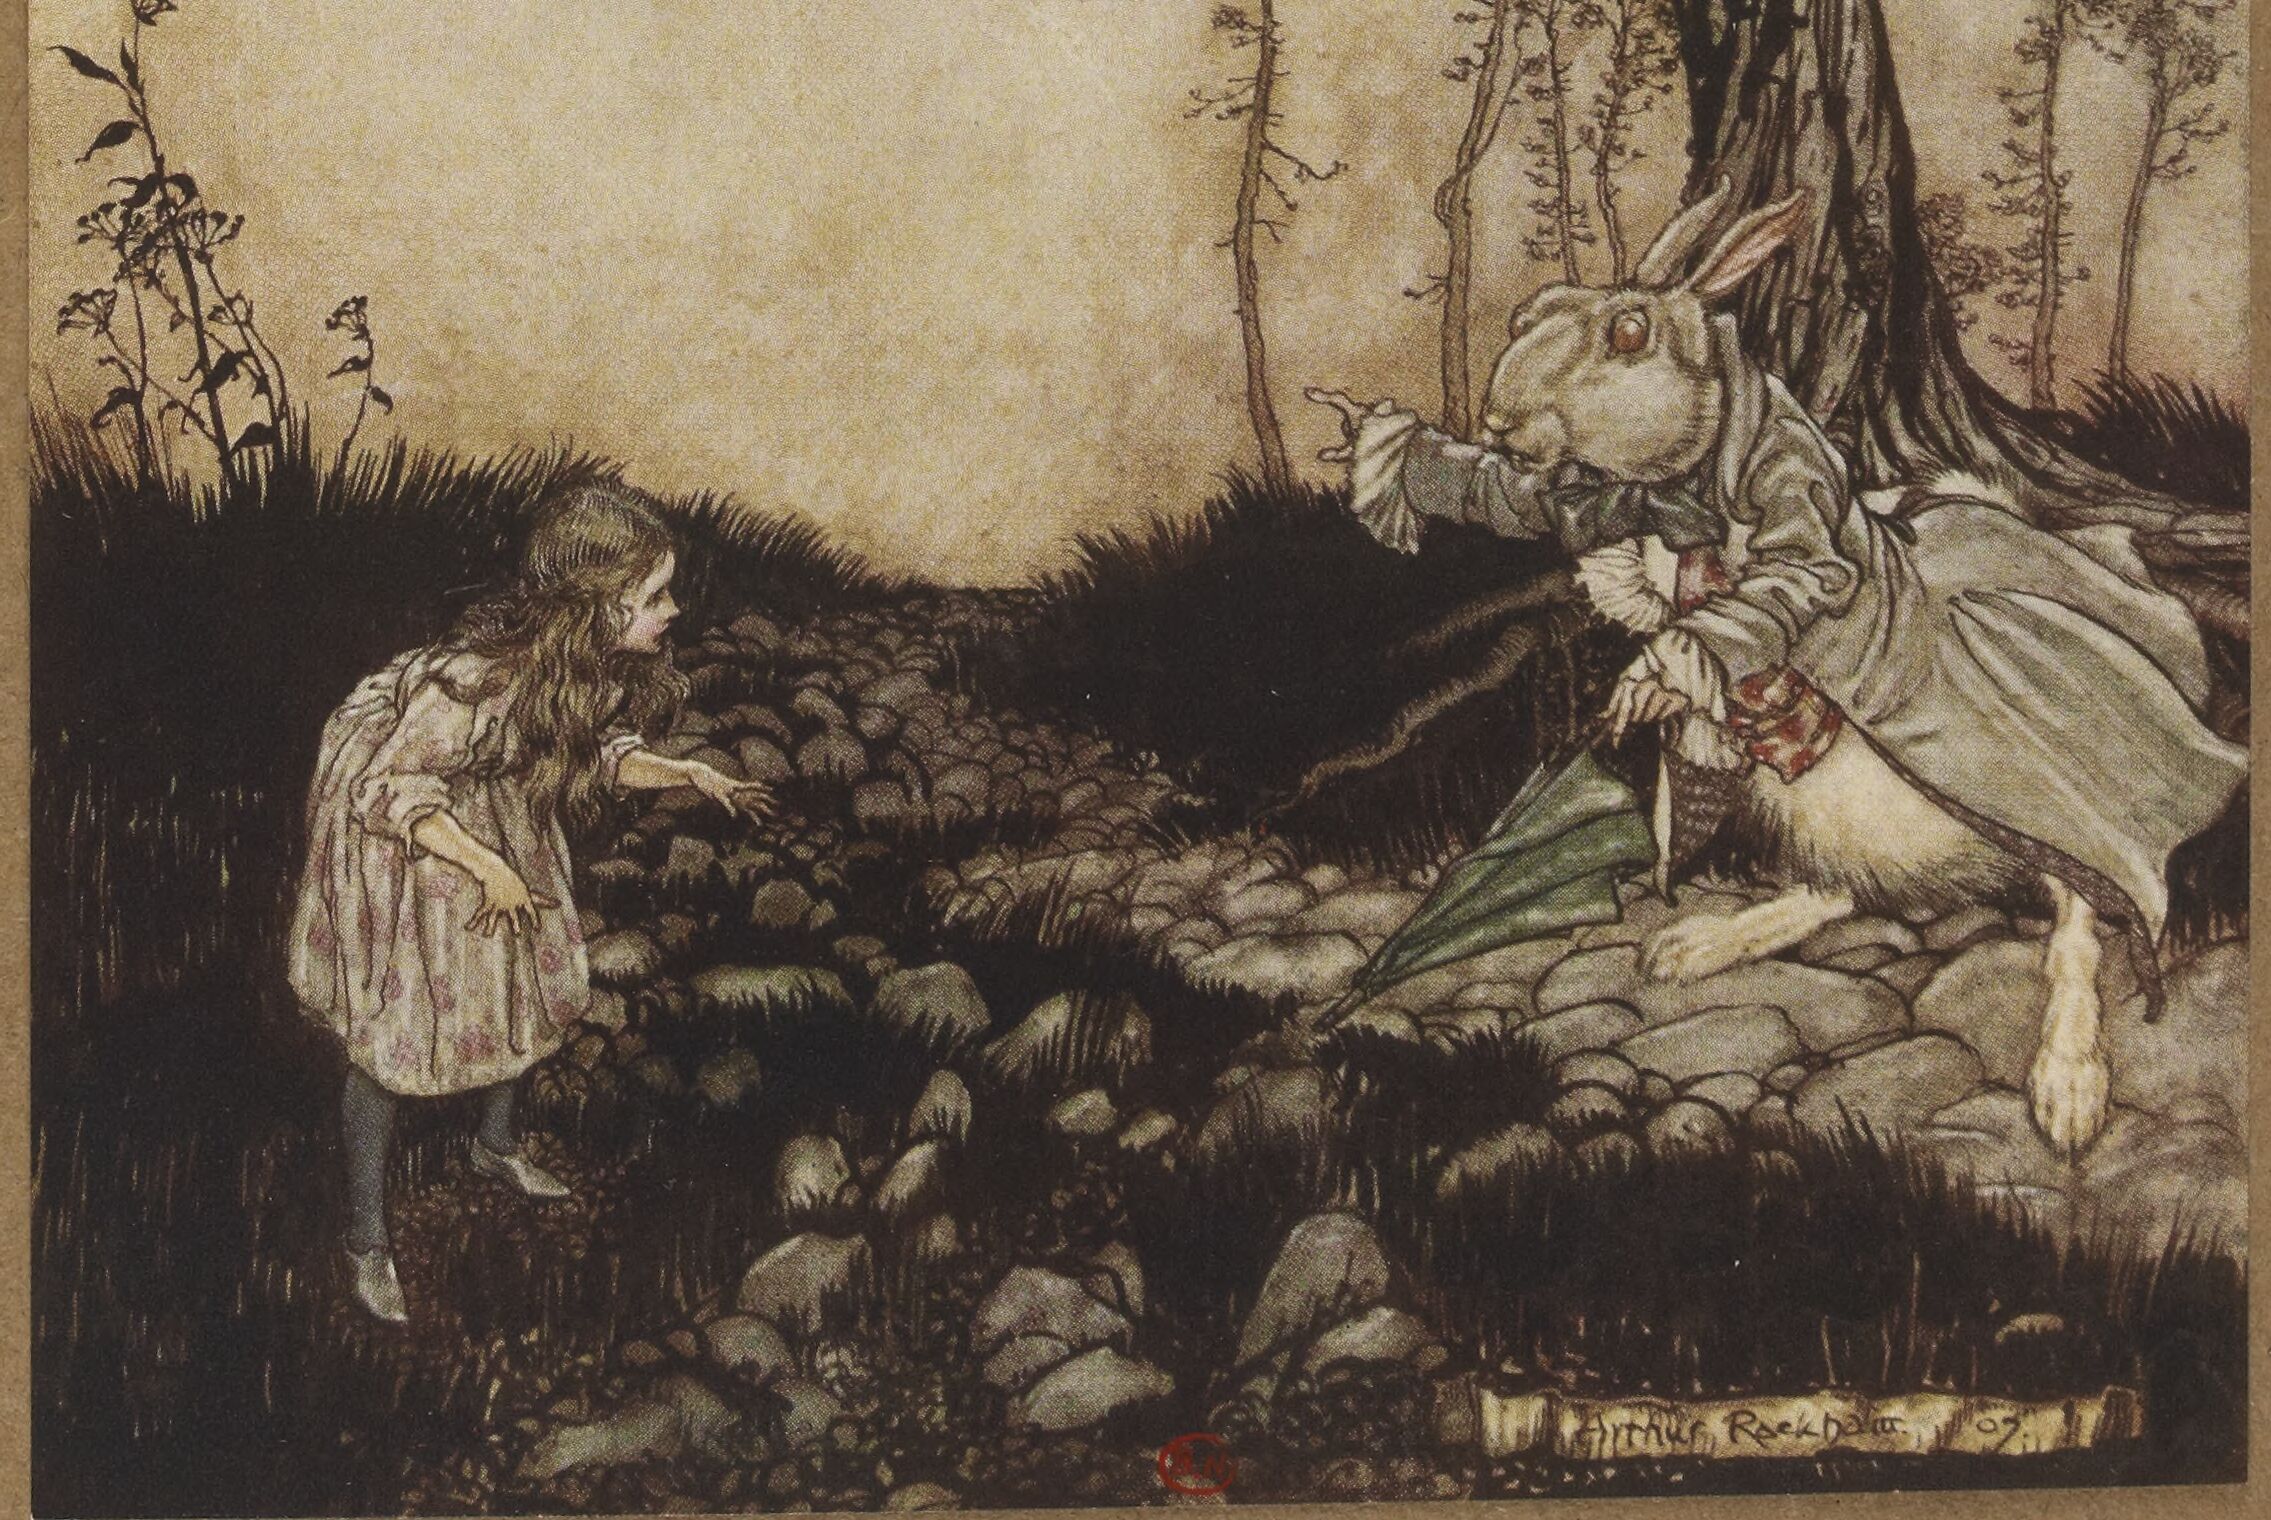 Aventures d'Alice au pays des merveilles par Lewis Carroll ; illustrées par Arthur Rackham ; 1908 | src BnF